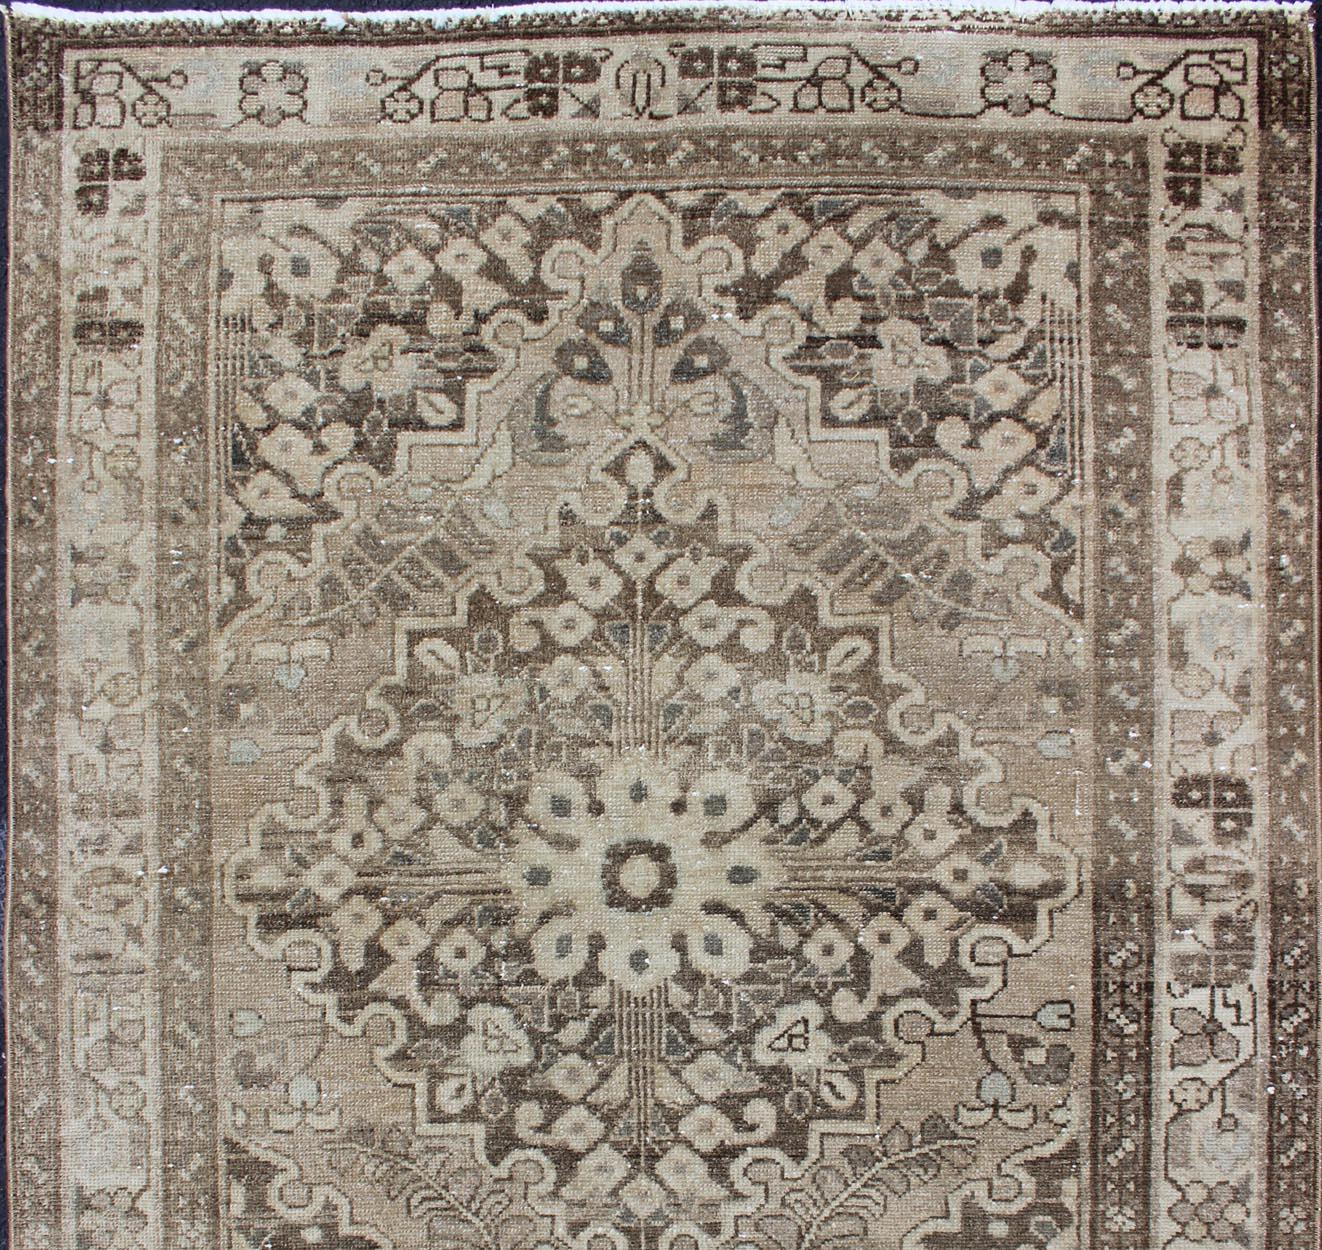 Persischer Lilihan-Teppich mit Mittelmedaillon in neutralen Tönen, Teppich h-711-39, Herkunftsland / Art: Iran / Lilihan, um 1950

Dieser spektakuläre persische Lilihan aus der Mitte des Jahrhunderts (um 1950) ist ein prächtiges Exemplar, das den